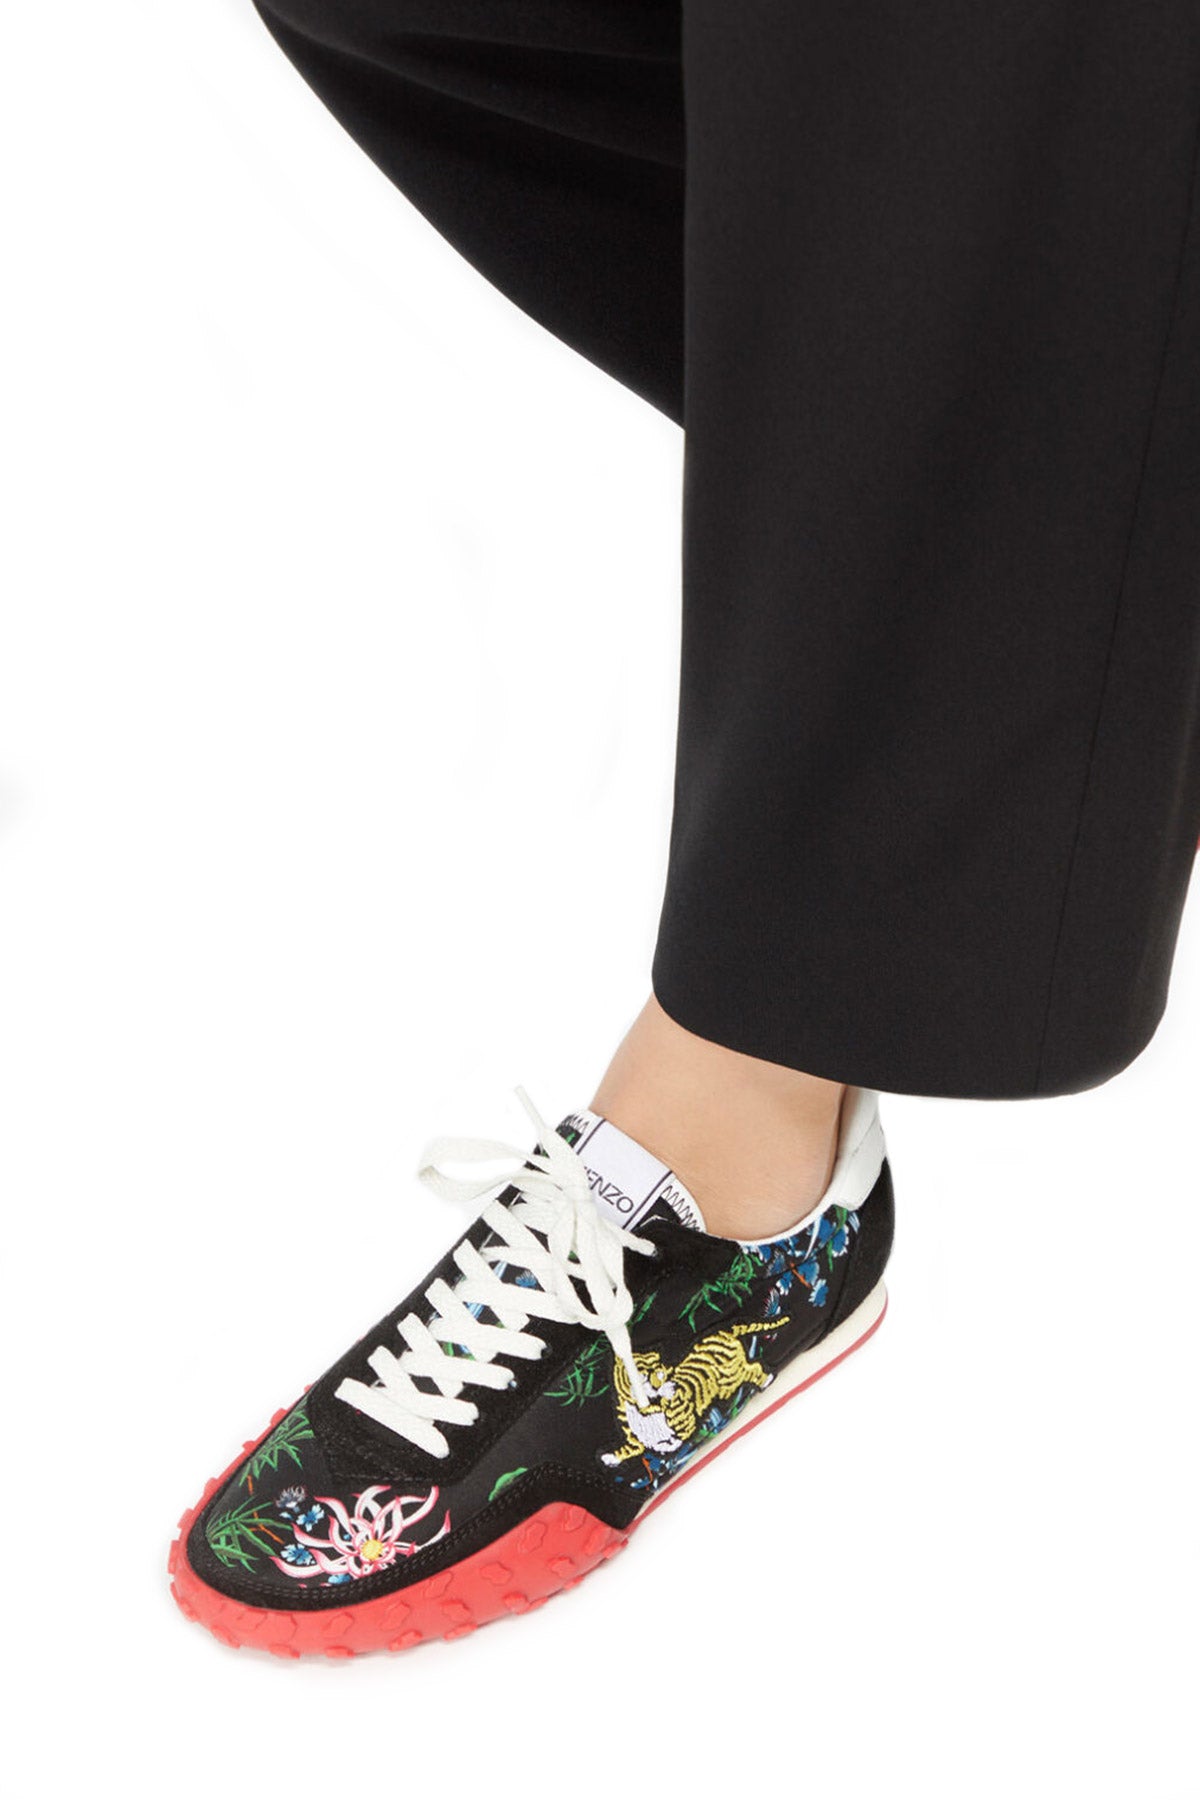 Kenzo Sneaker Ayakkabı-Libas Trendy Fashion Store